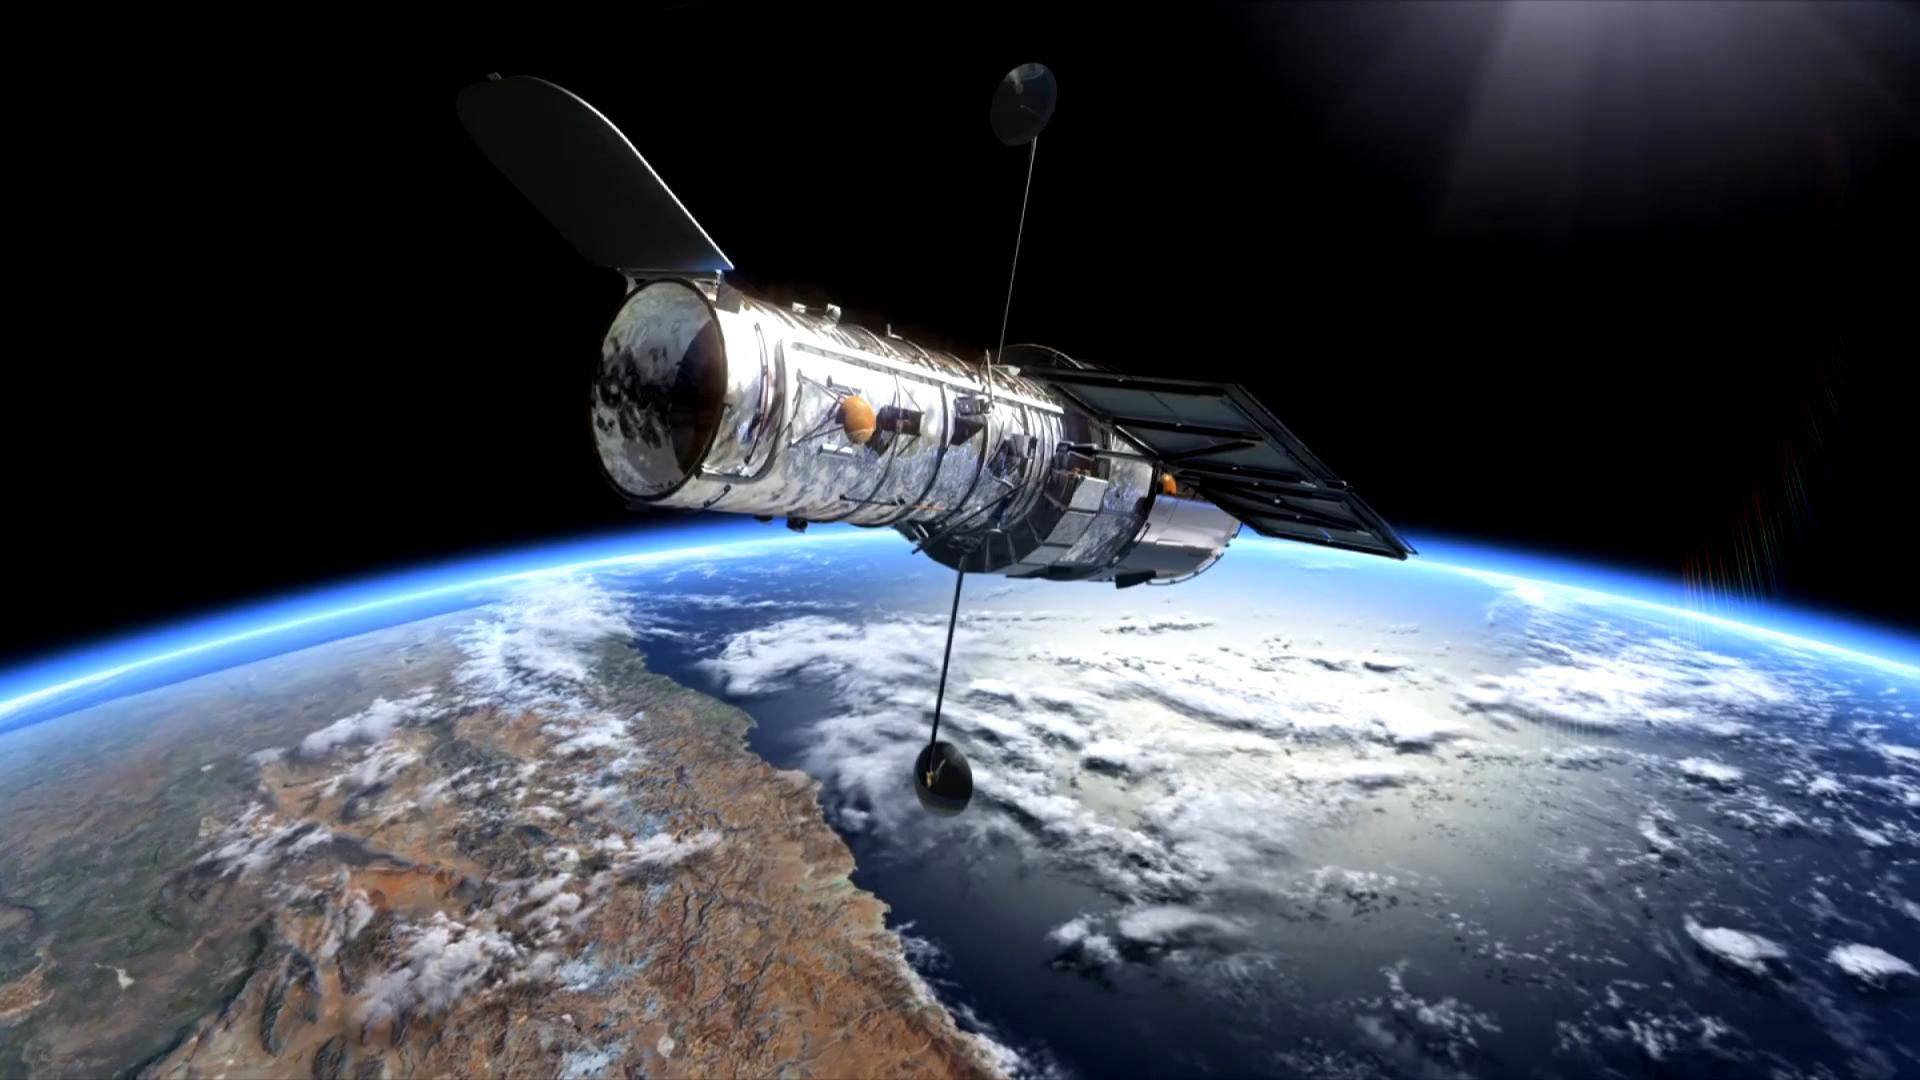 «Hubble» ha fatto una nuova foto, che vi ricorderà quanto è insignificante